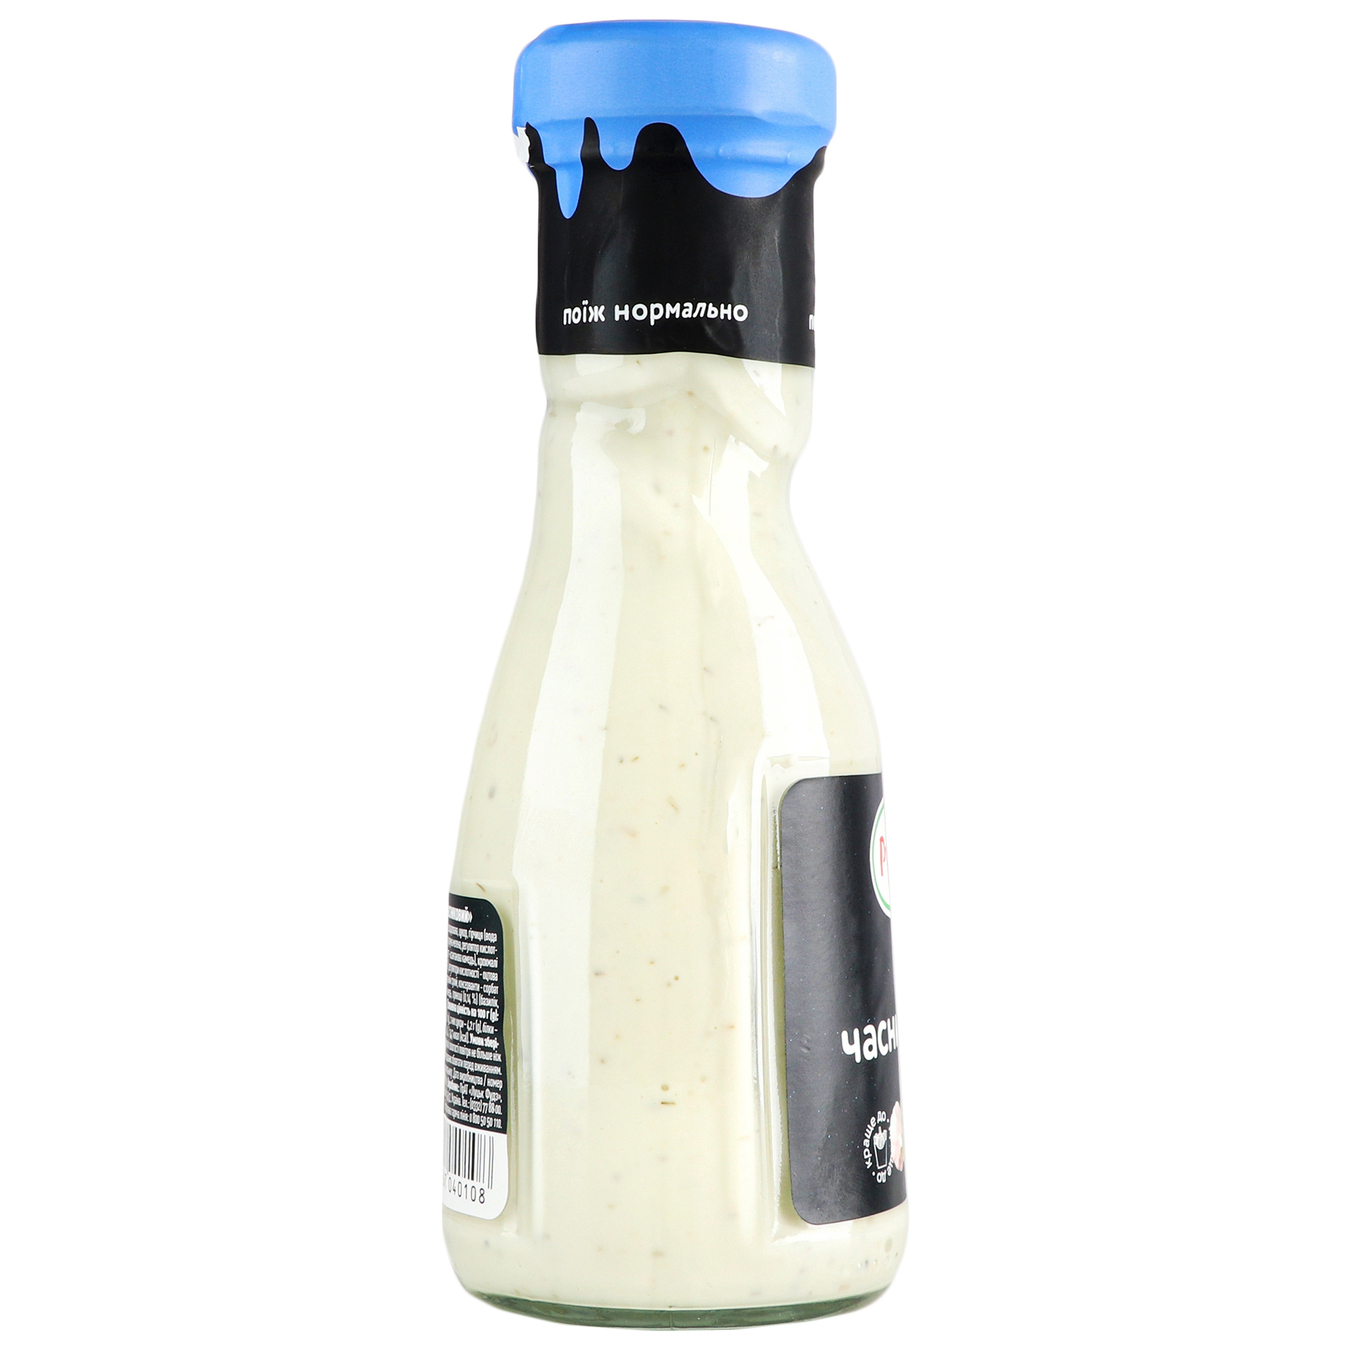 Runa mayonnaise garlic sauce sterilized 235g 4